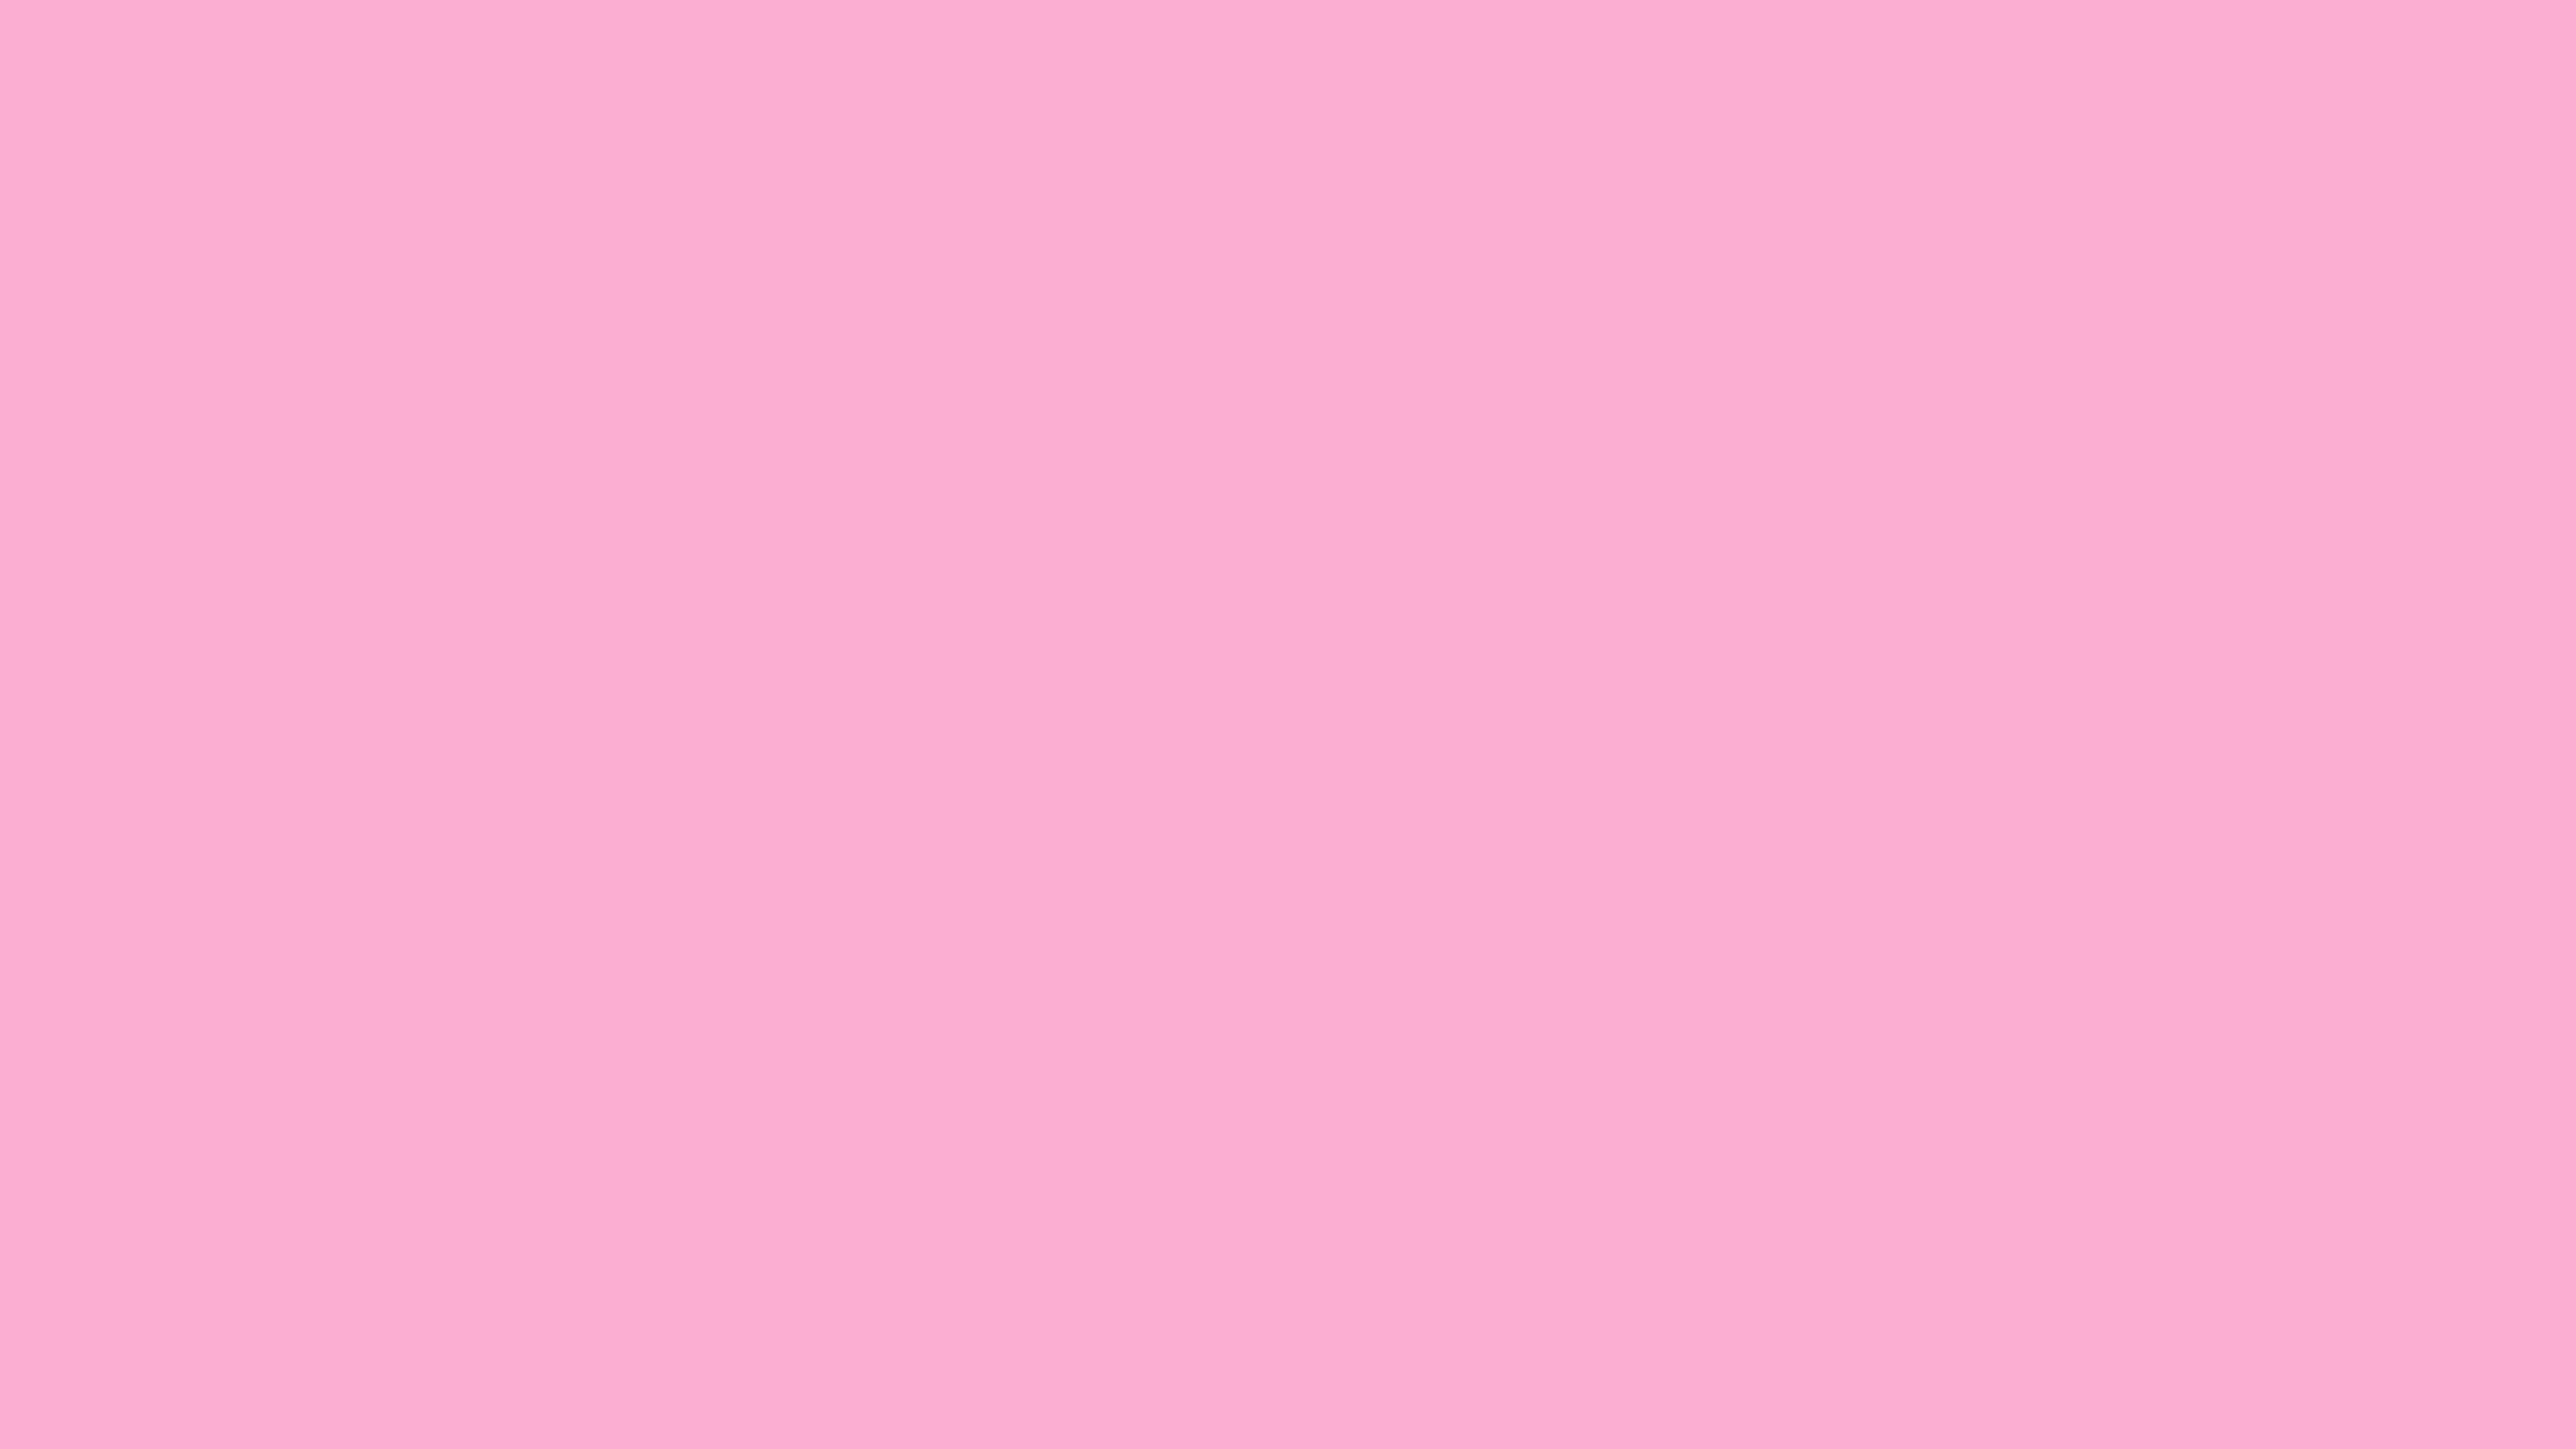 7680x4320 Lavender Pink Solid Color Background